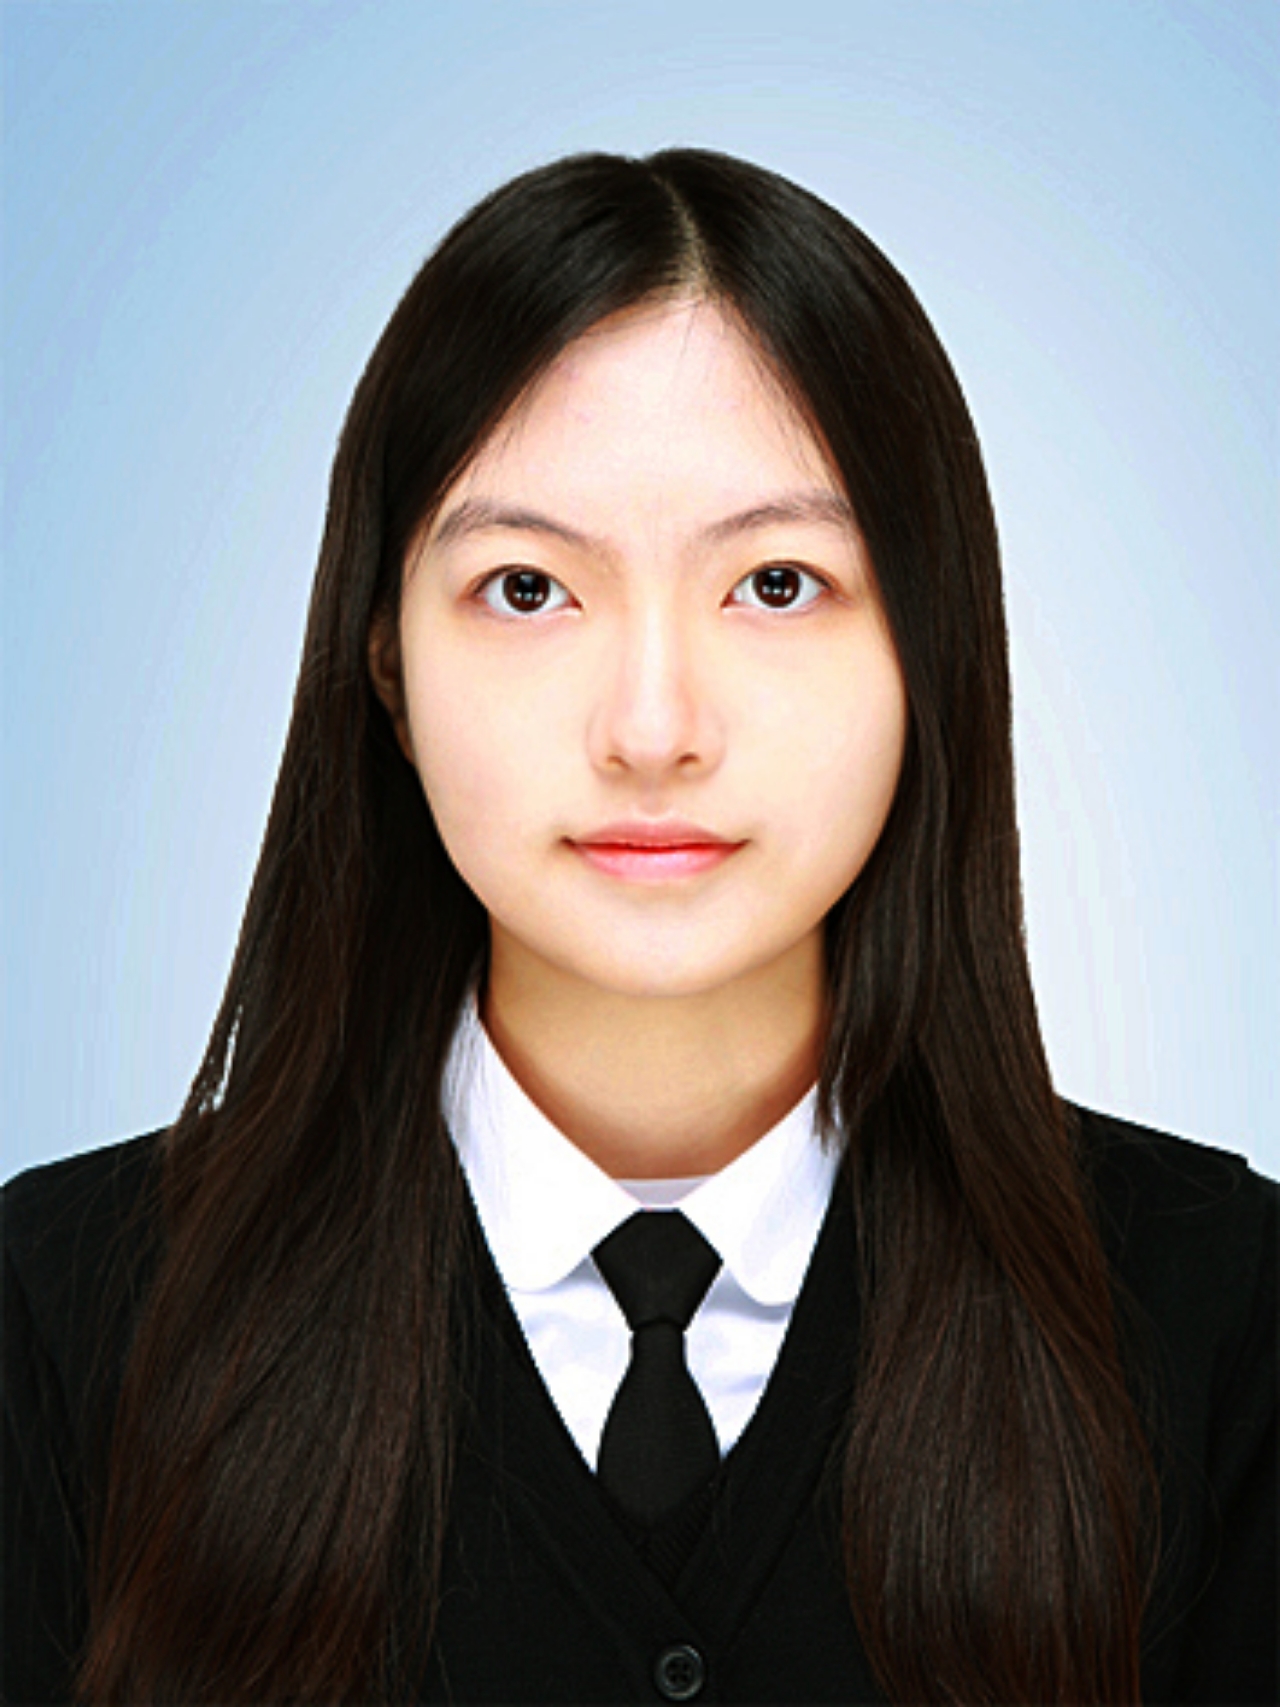 김가현(16)양 증명사진